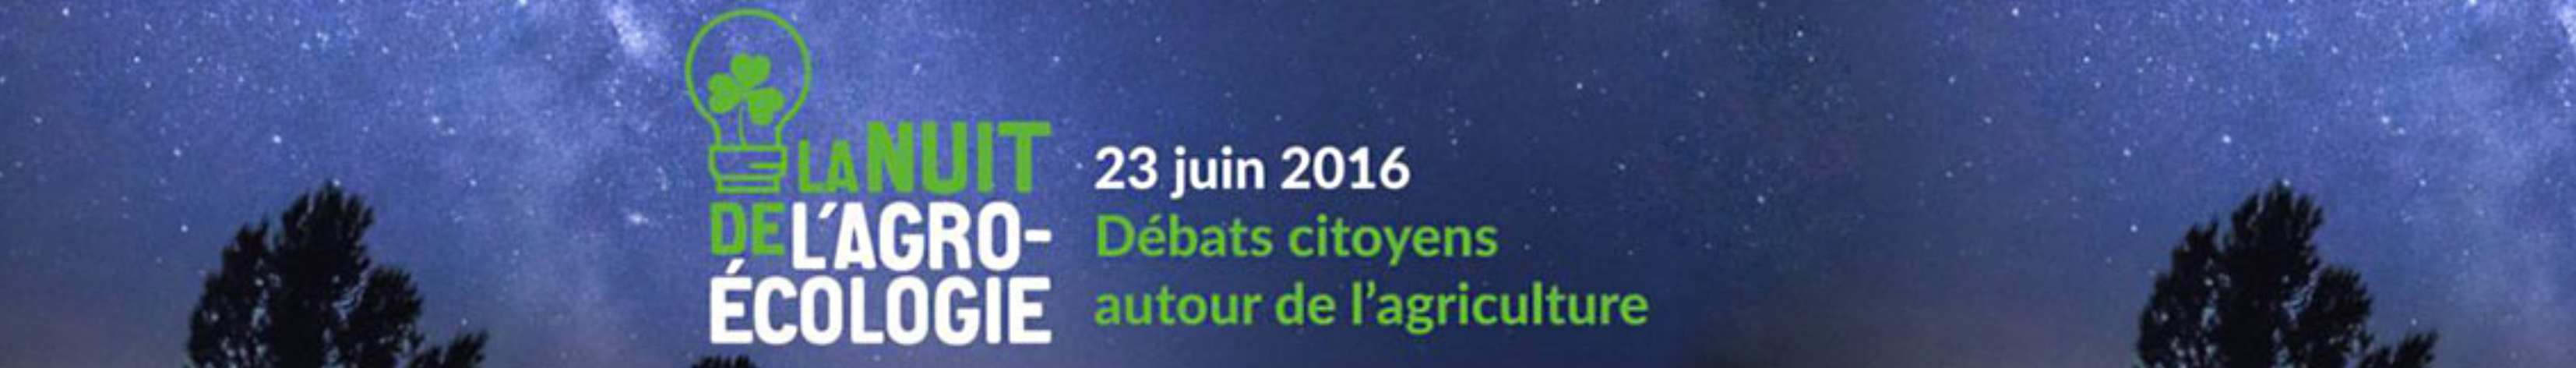 La Nuit de l'Agro-Ecologie  - 23 juin 2016